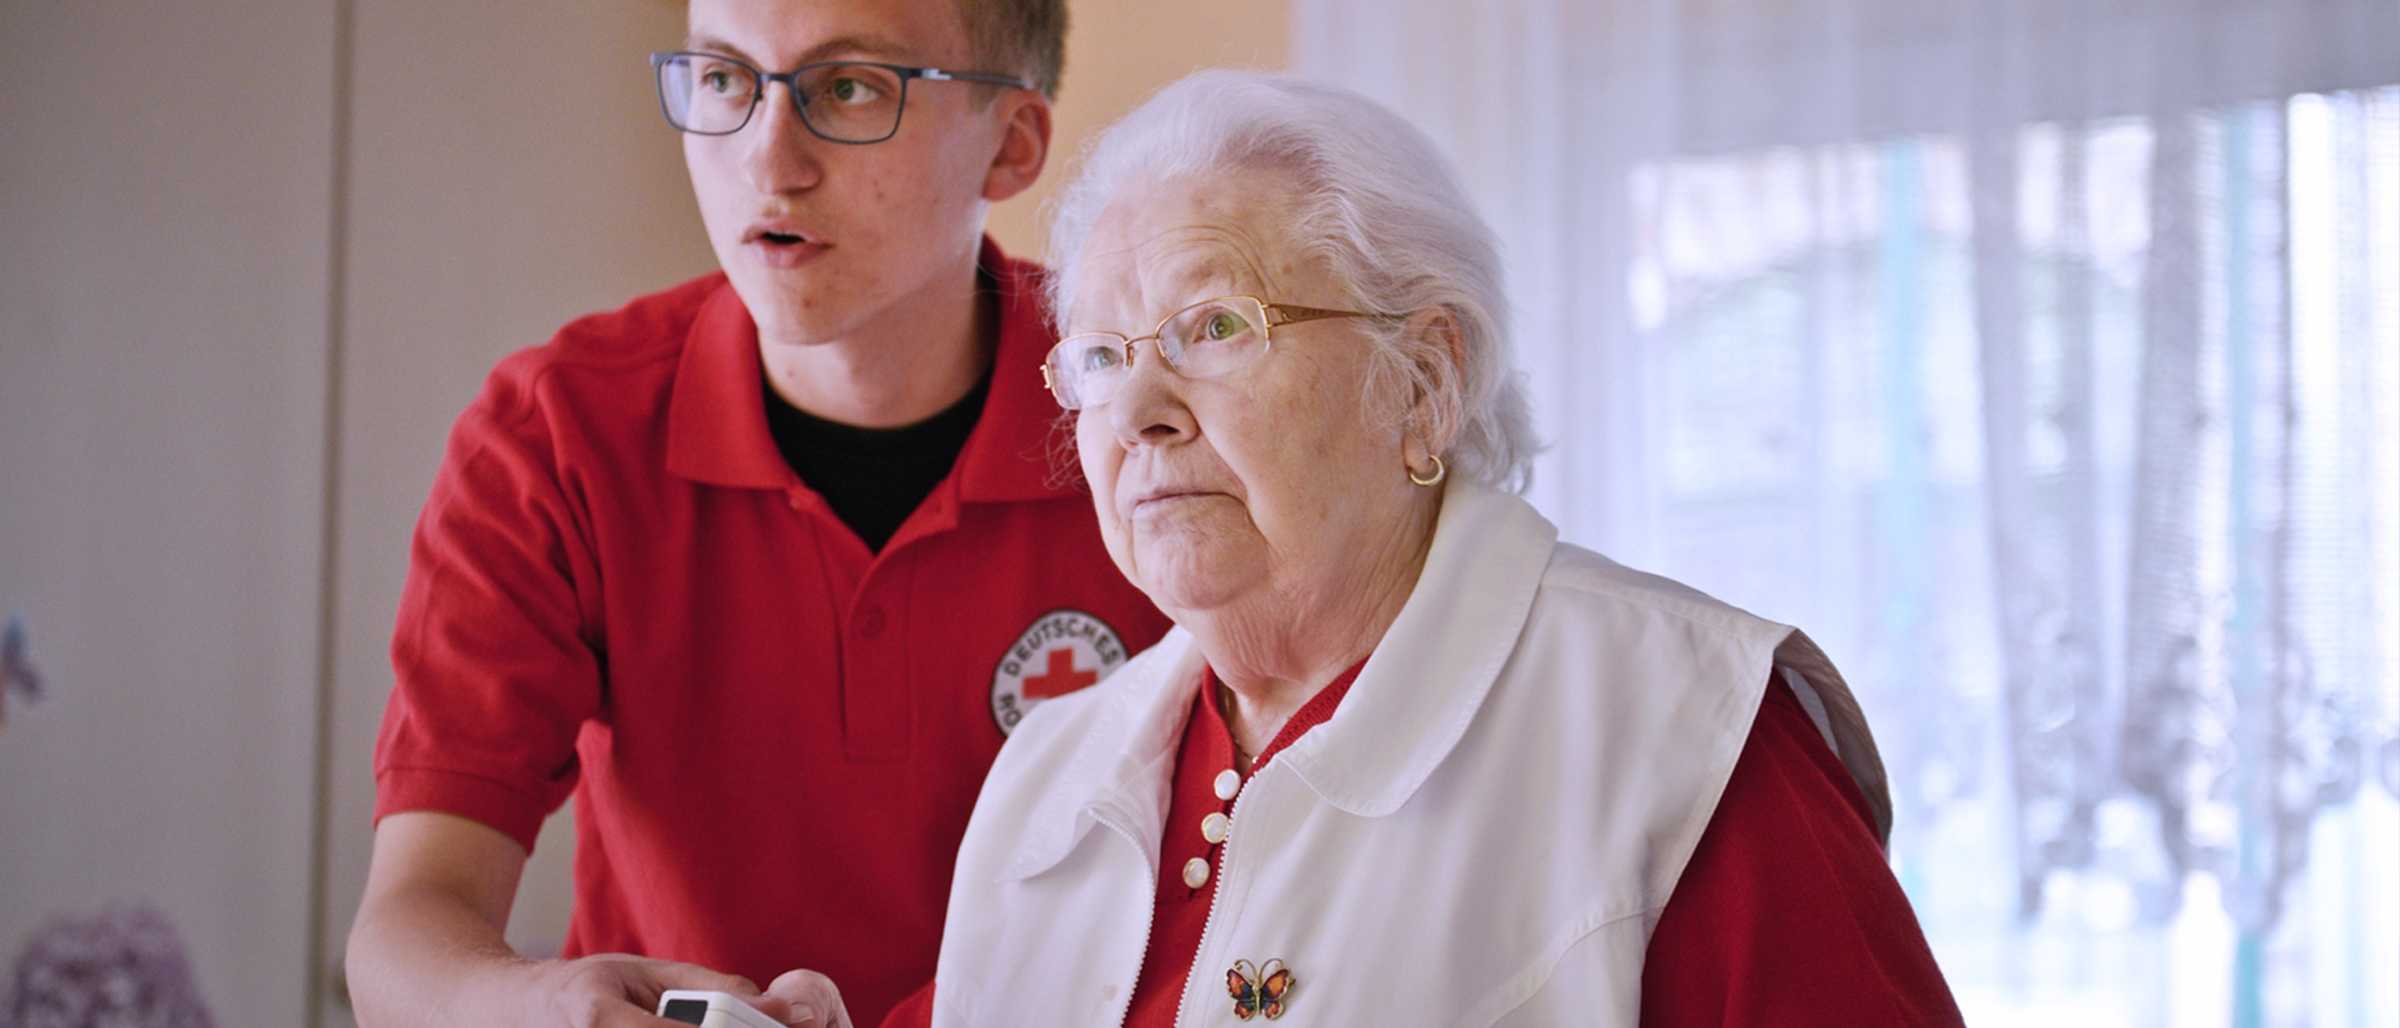 Clemens Brambach als FSJ'ler im FSJ freiwillig + digital, der auf dem Foto neben einer älteren Dame steht und gemeinsam mit ihr einen Nintendo Wii Controller festhält